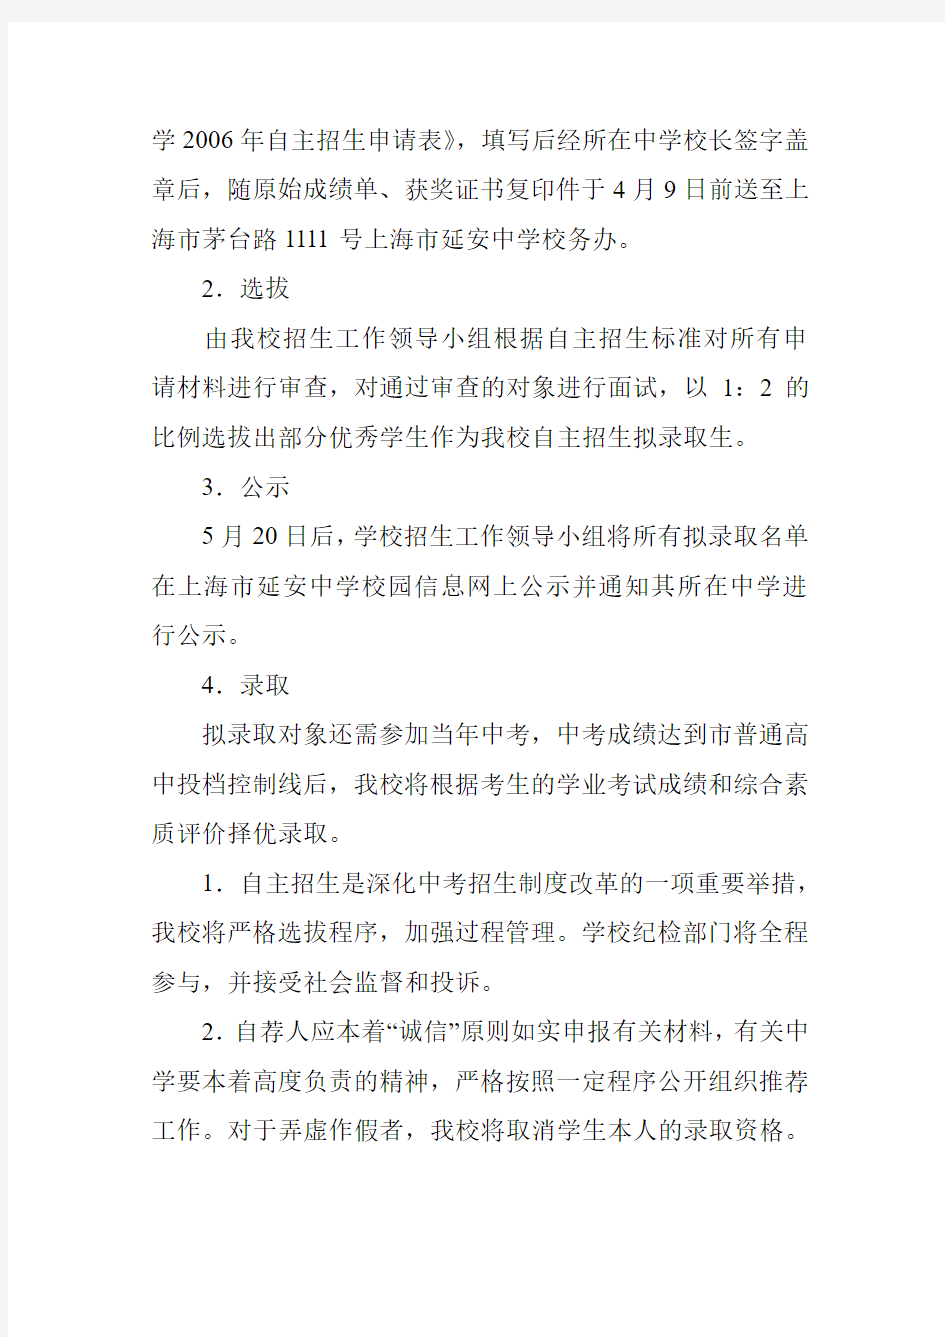 上海市延安中学自主招生方案